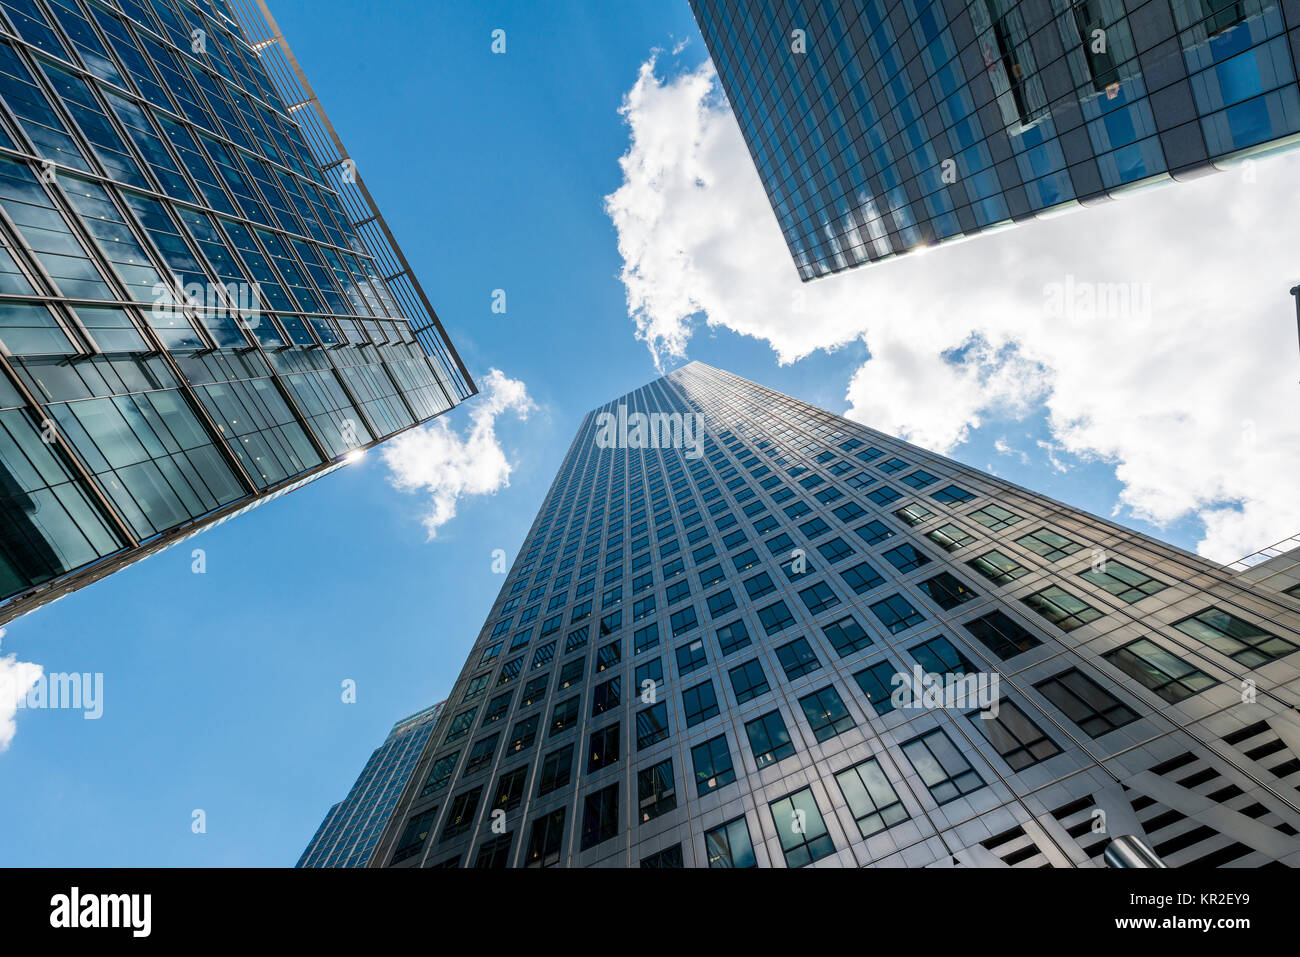 Rascacielos con fachadas de cristal torre en el cielo, la arquitectura moderna, una Plaza Canadá, Canary Wharf, Londres, Inglaterra Foto de stock